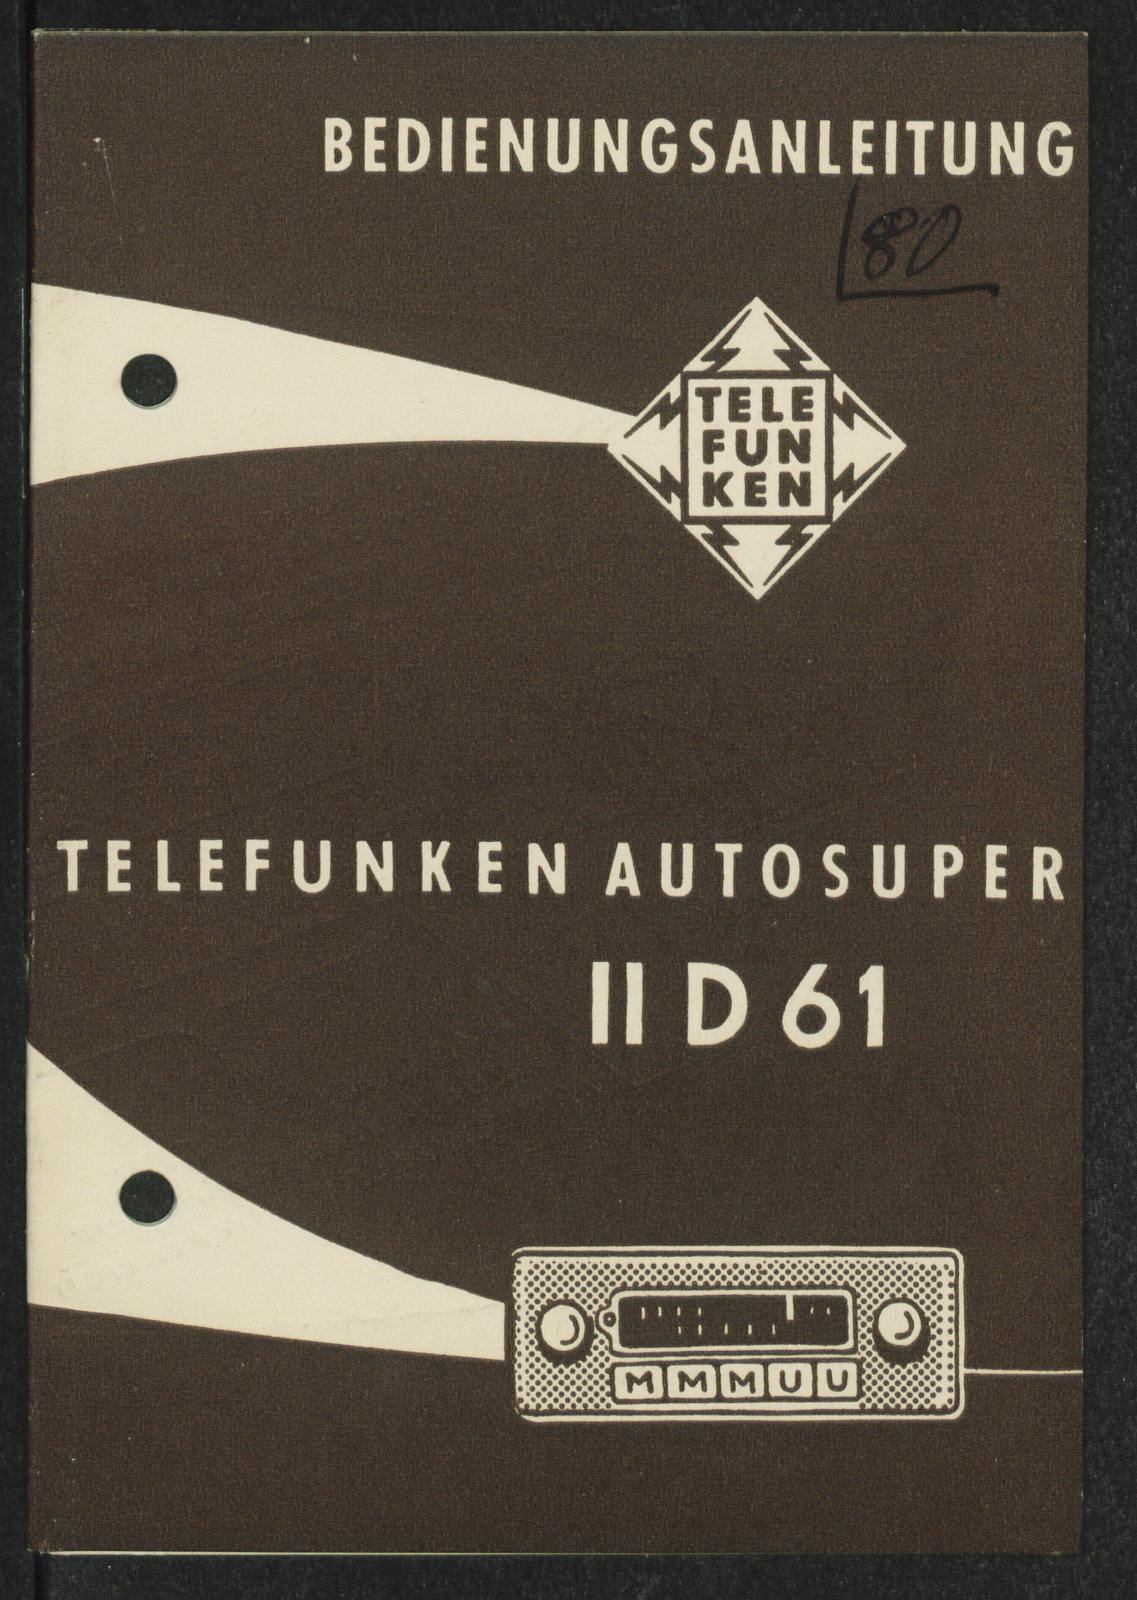 Bedienungsanleitung: Bedienungsanleitung Telefunken Autosuper II D 61 (Stiftung Deutsches Technikmuseum Berlin CC0)